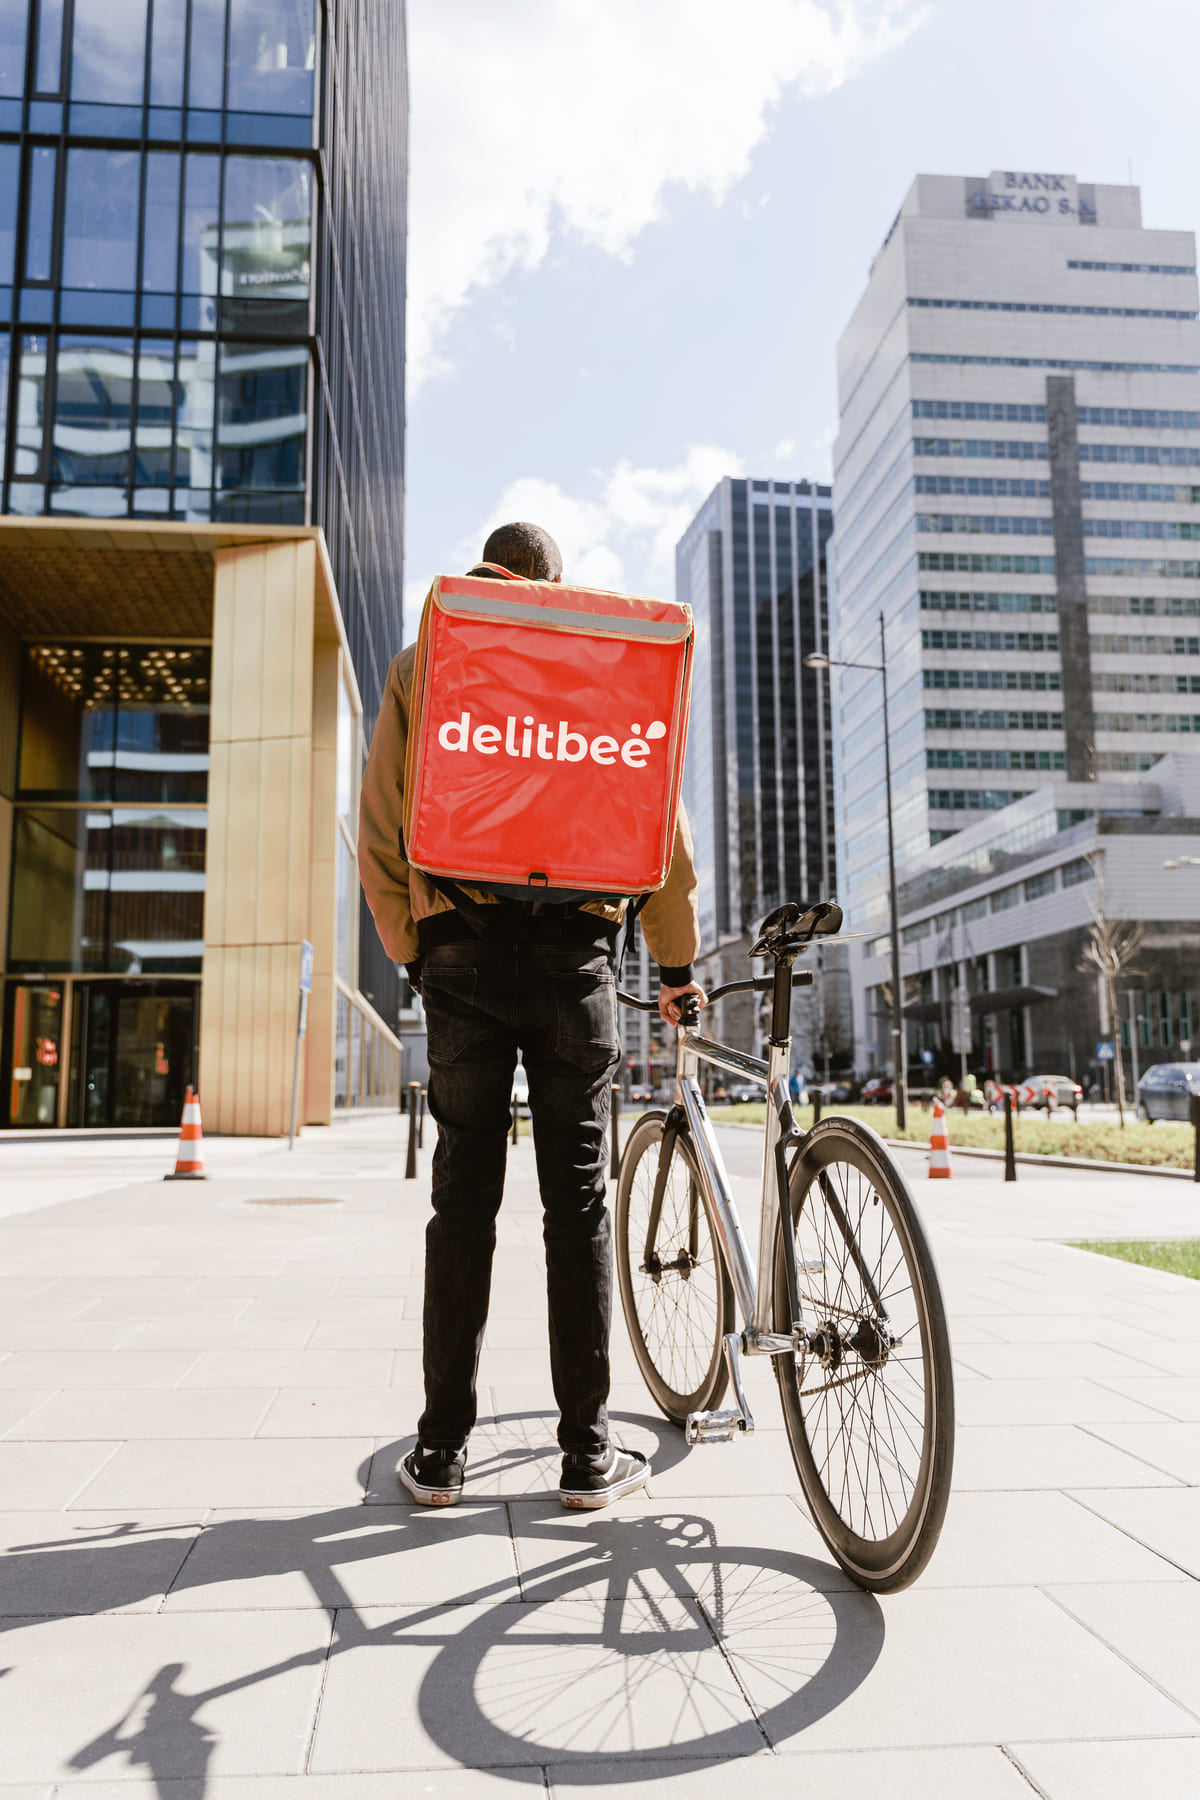 Repartido de comida a domicilio de espaldas con una mochila isotermica con el logo de Delitbee